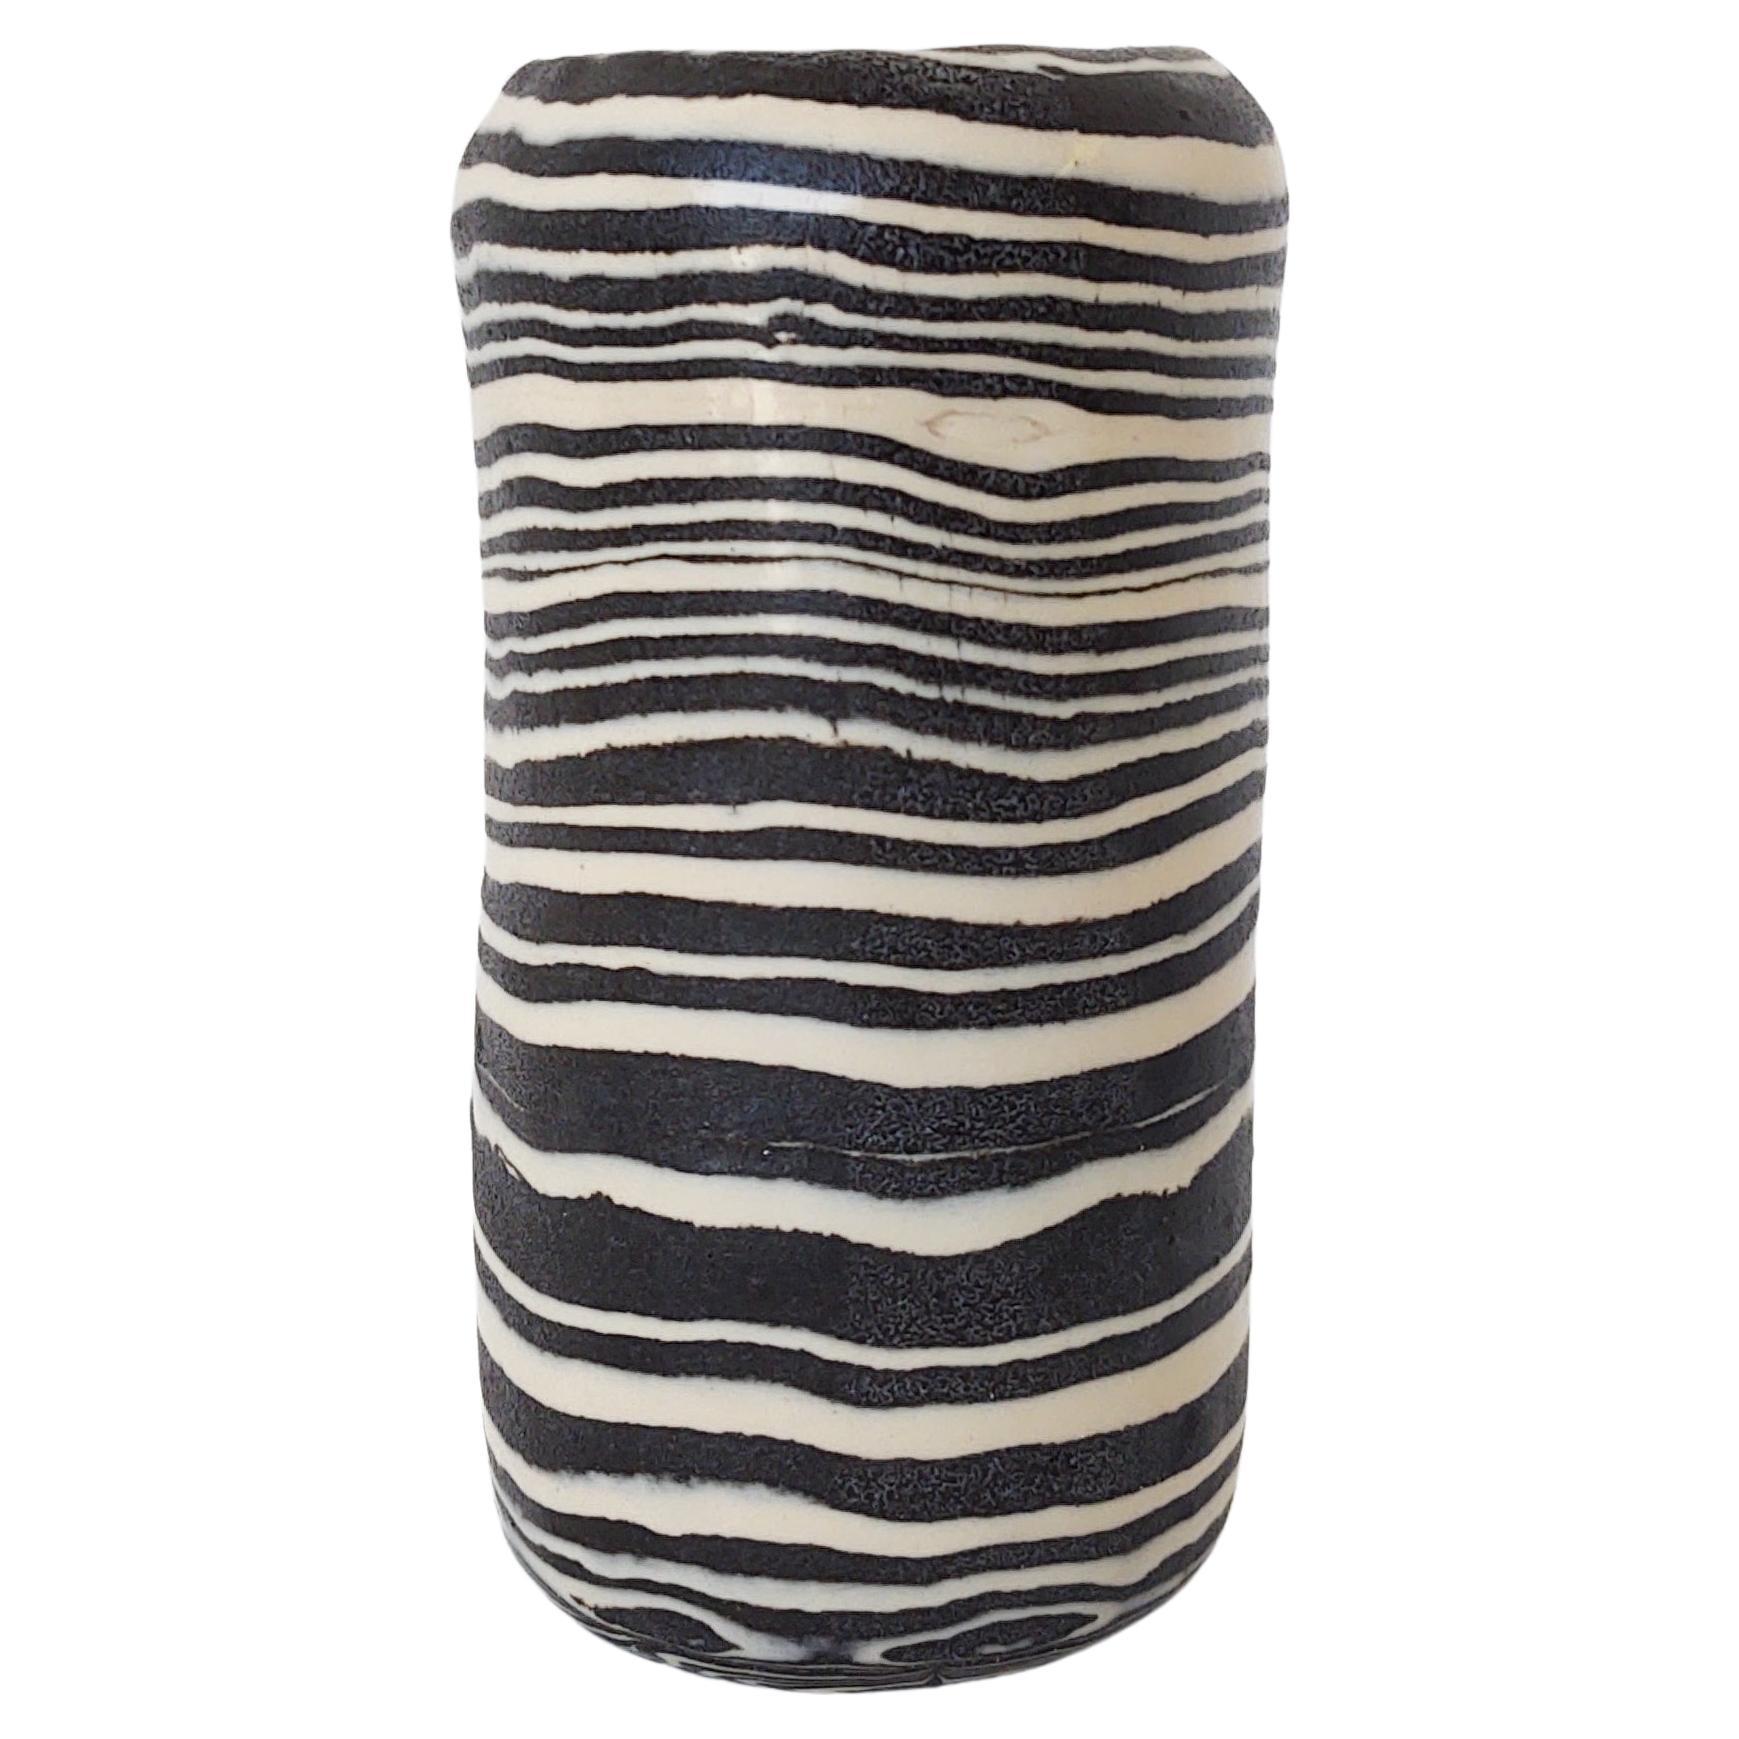 Handmade Ceramic Nerikomi 'Zebra' Striped Black and White Vase by Fizzy Ceramics For Sale